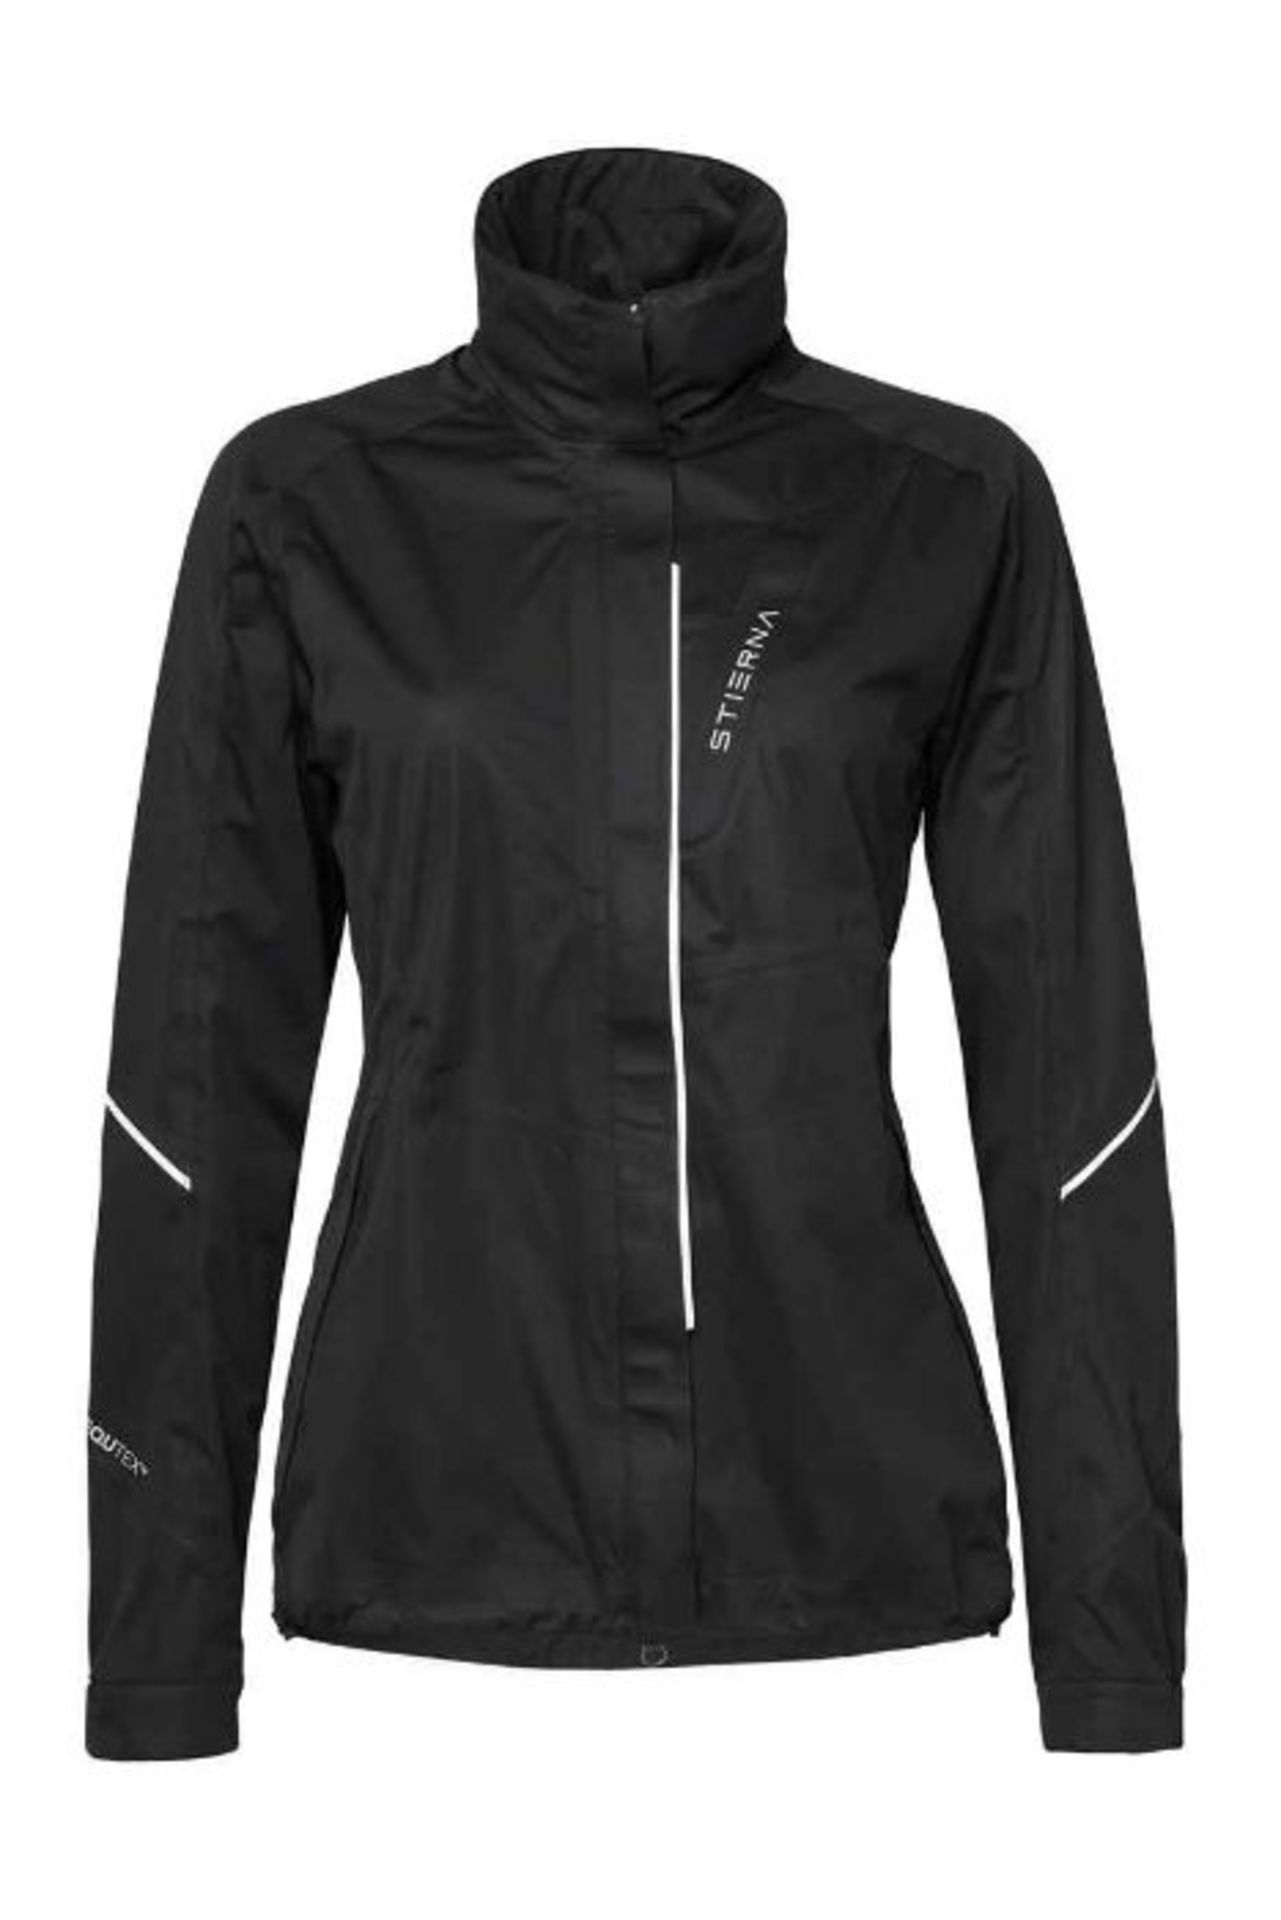 Stierna Prime 3L Ladies Waterproof Jacket, Black, Large - Image 3 of 3